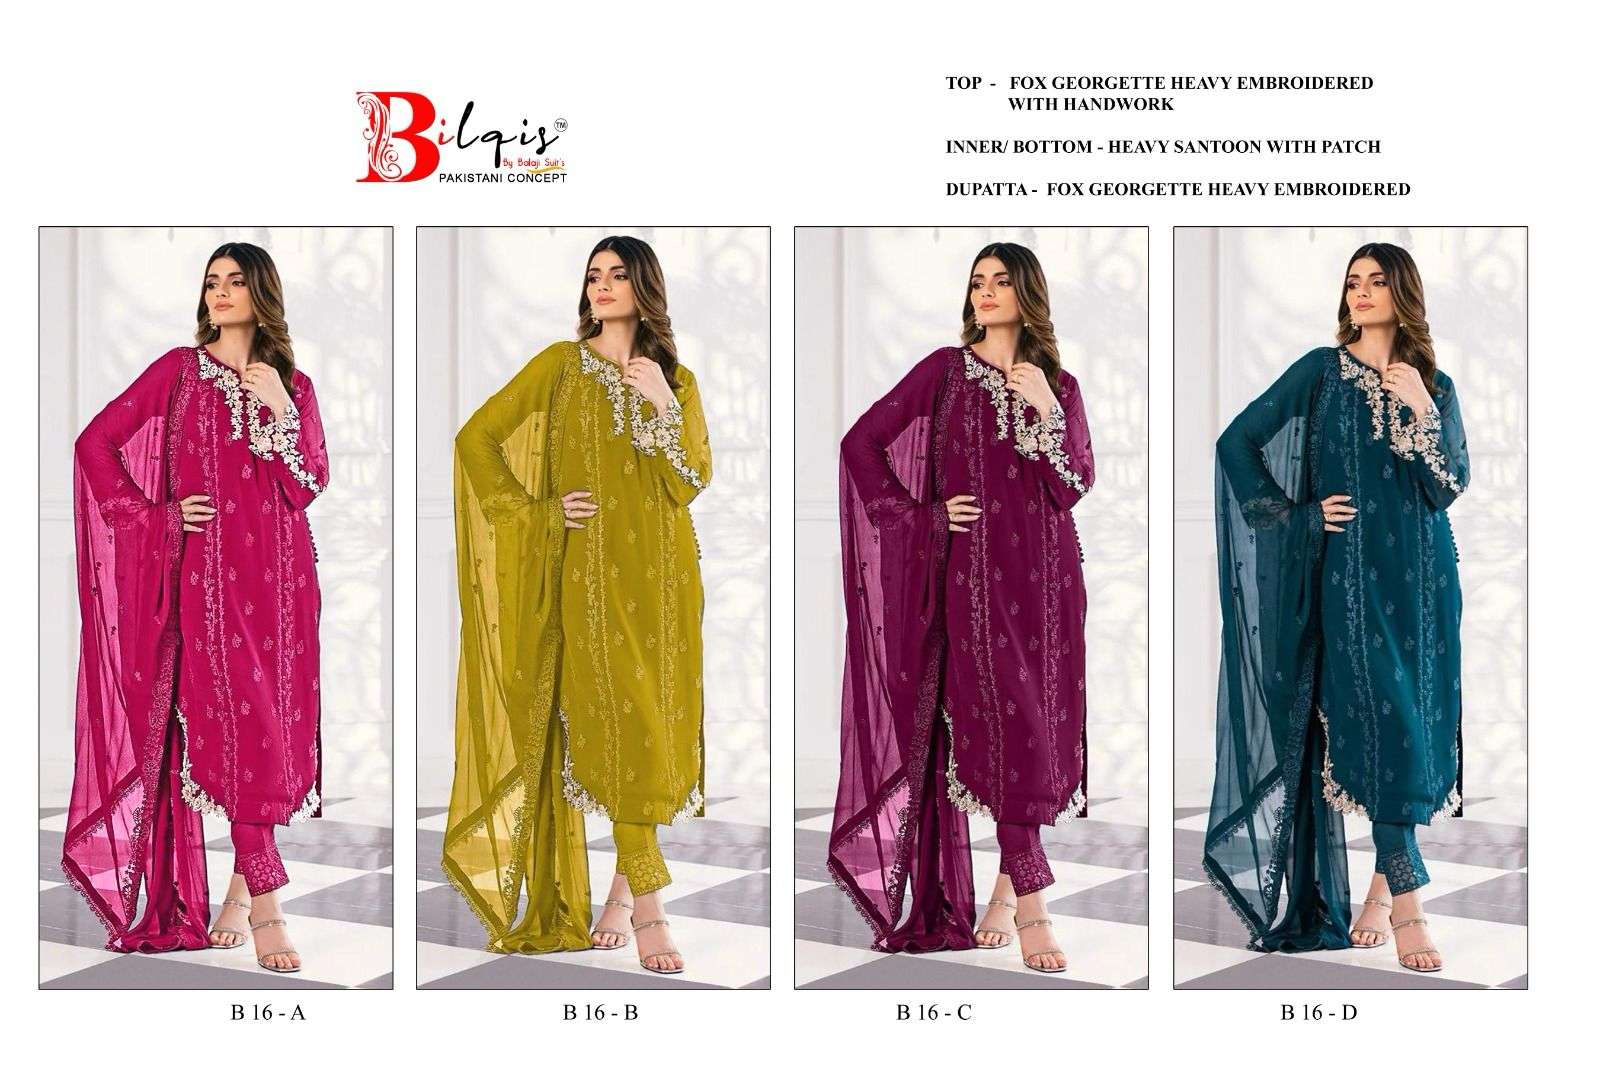 Bilqis B 16 A to D Faux Georgette Pakistani Suits Wholesale catalog